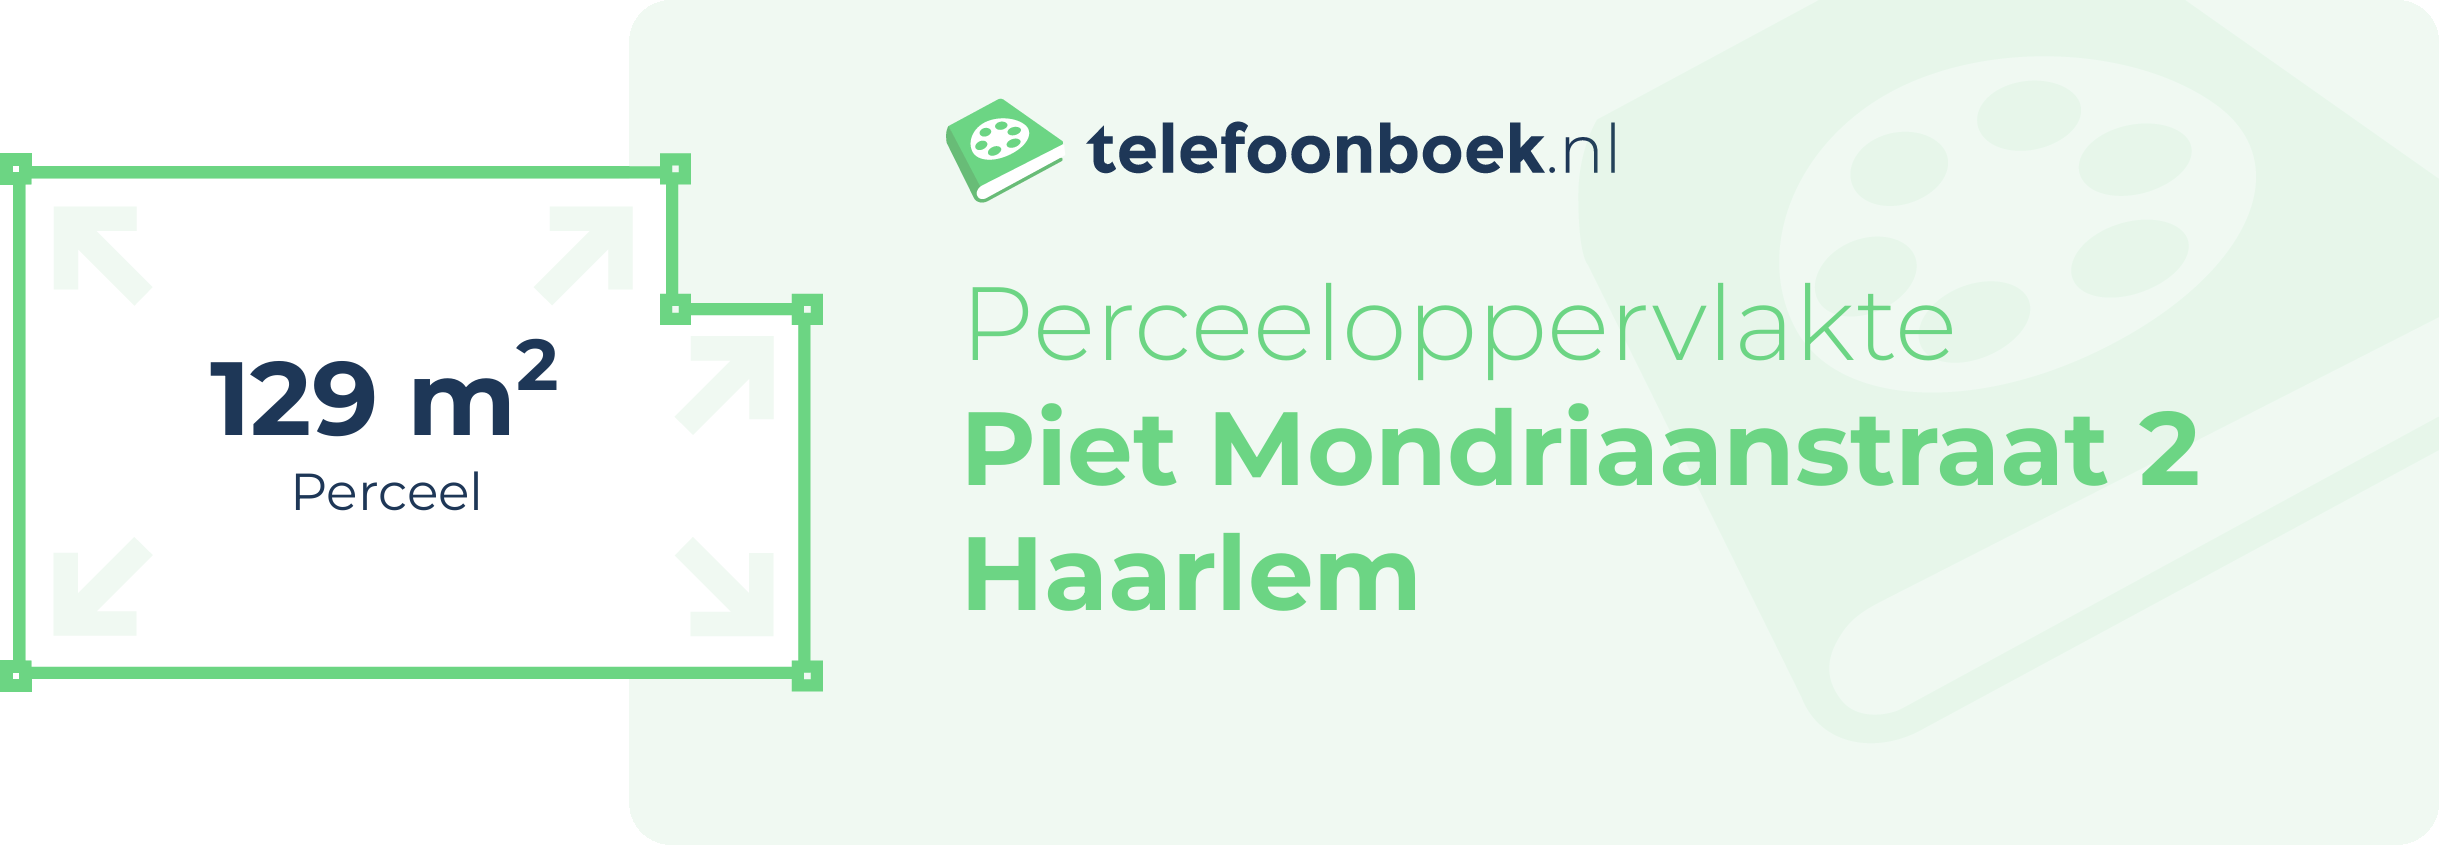 Perceeloppervlakte Piet Mondriaanstraat 2 Haarlem